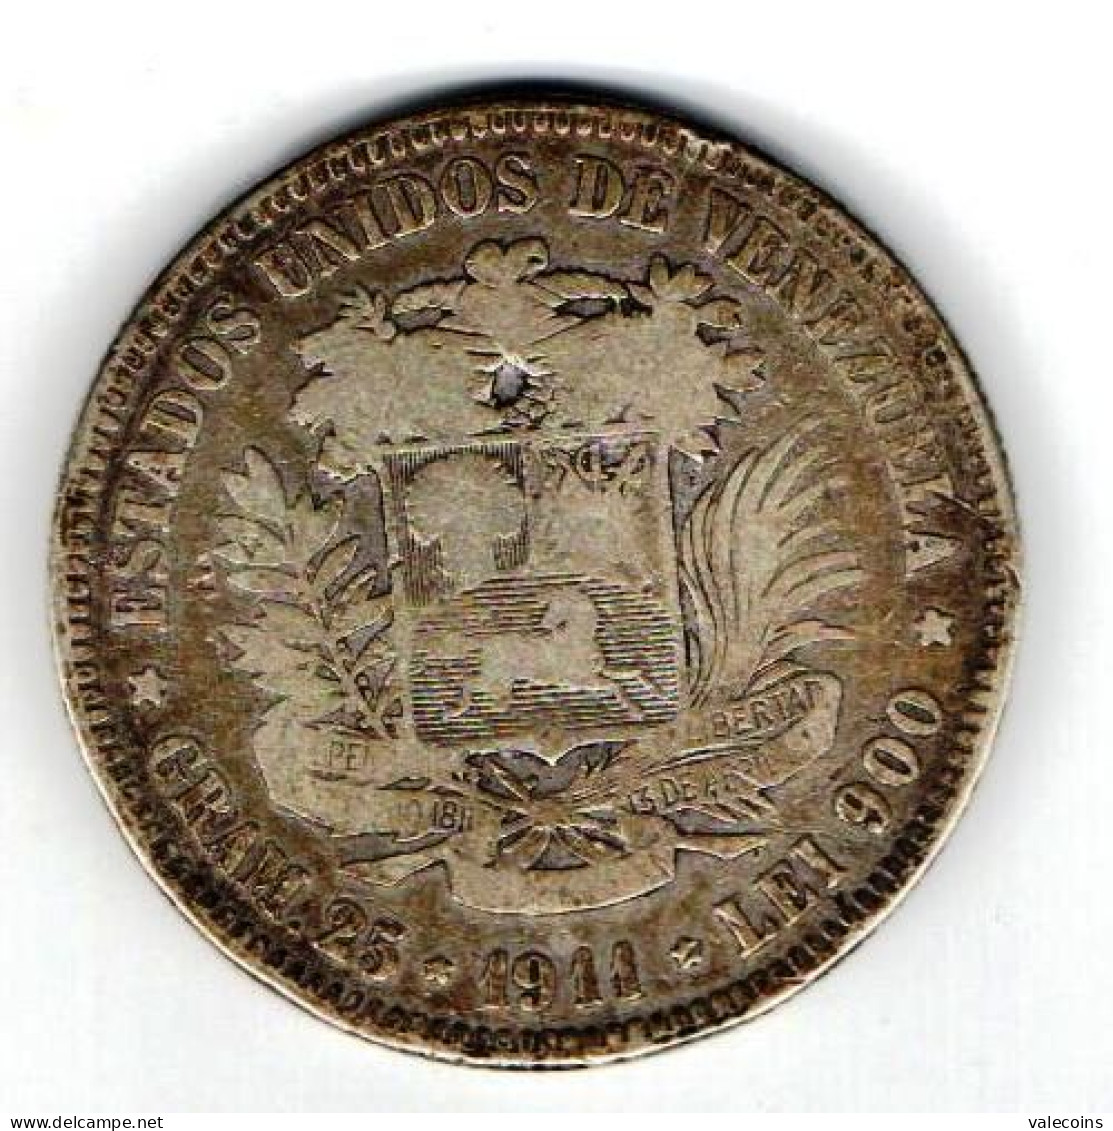 # VENEZUELA - 1911 - 5 Bolívares - KM 24 - BOLÍVAR -  ESTADOS UNIDOS DE VENEZUELA  GRAM.25  1911  LEI 900 Argent Silver - Venezuela